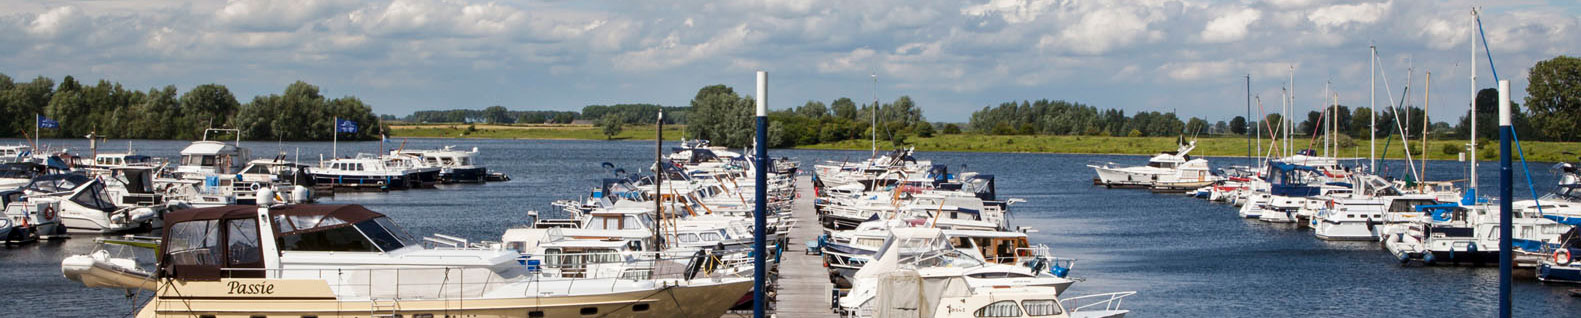 Van Gent Watersport uitzicht op jachthaven